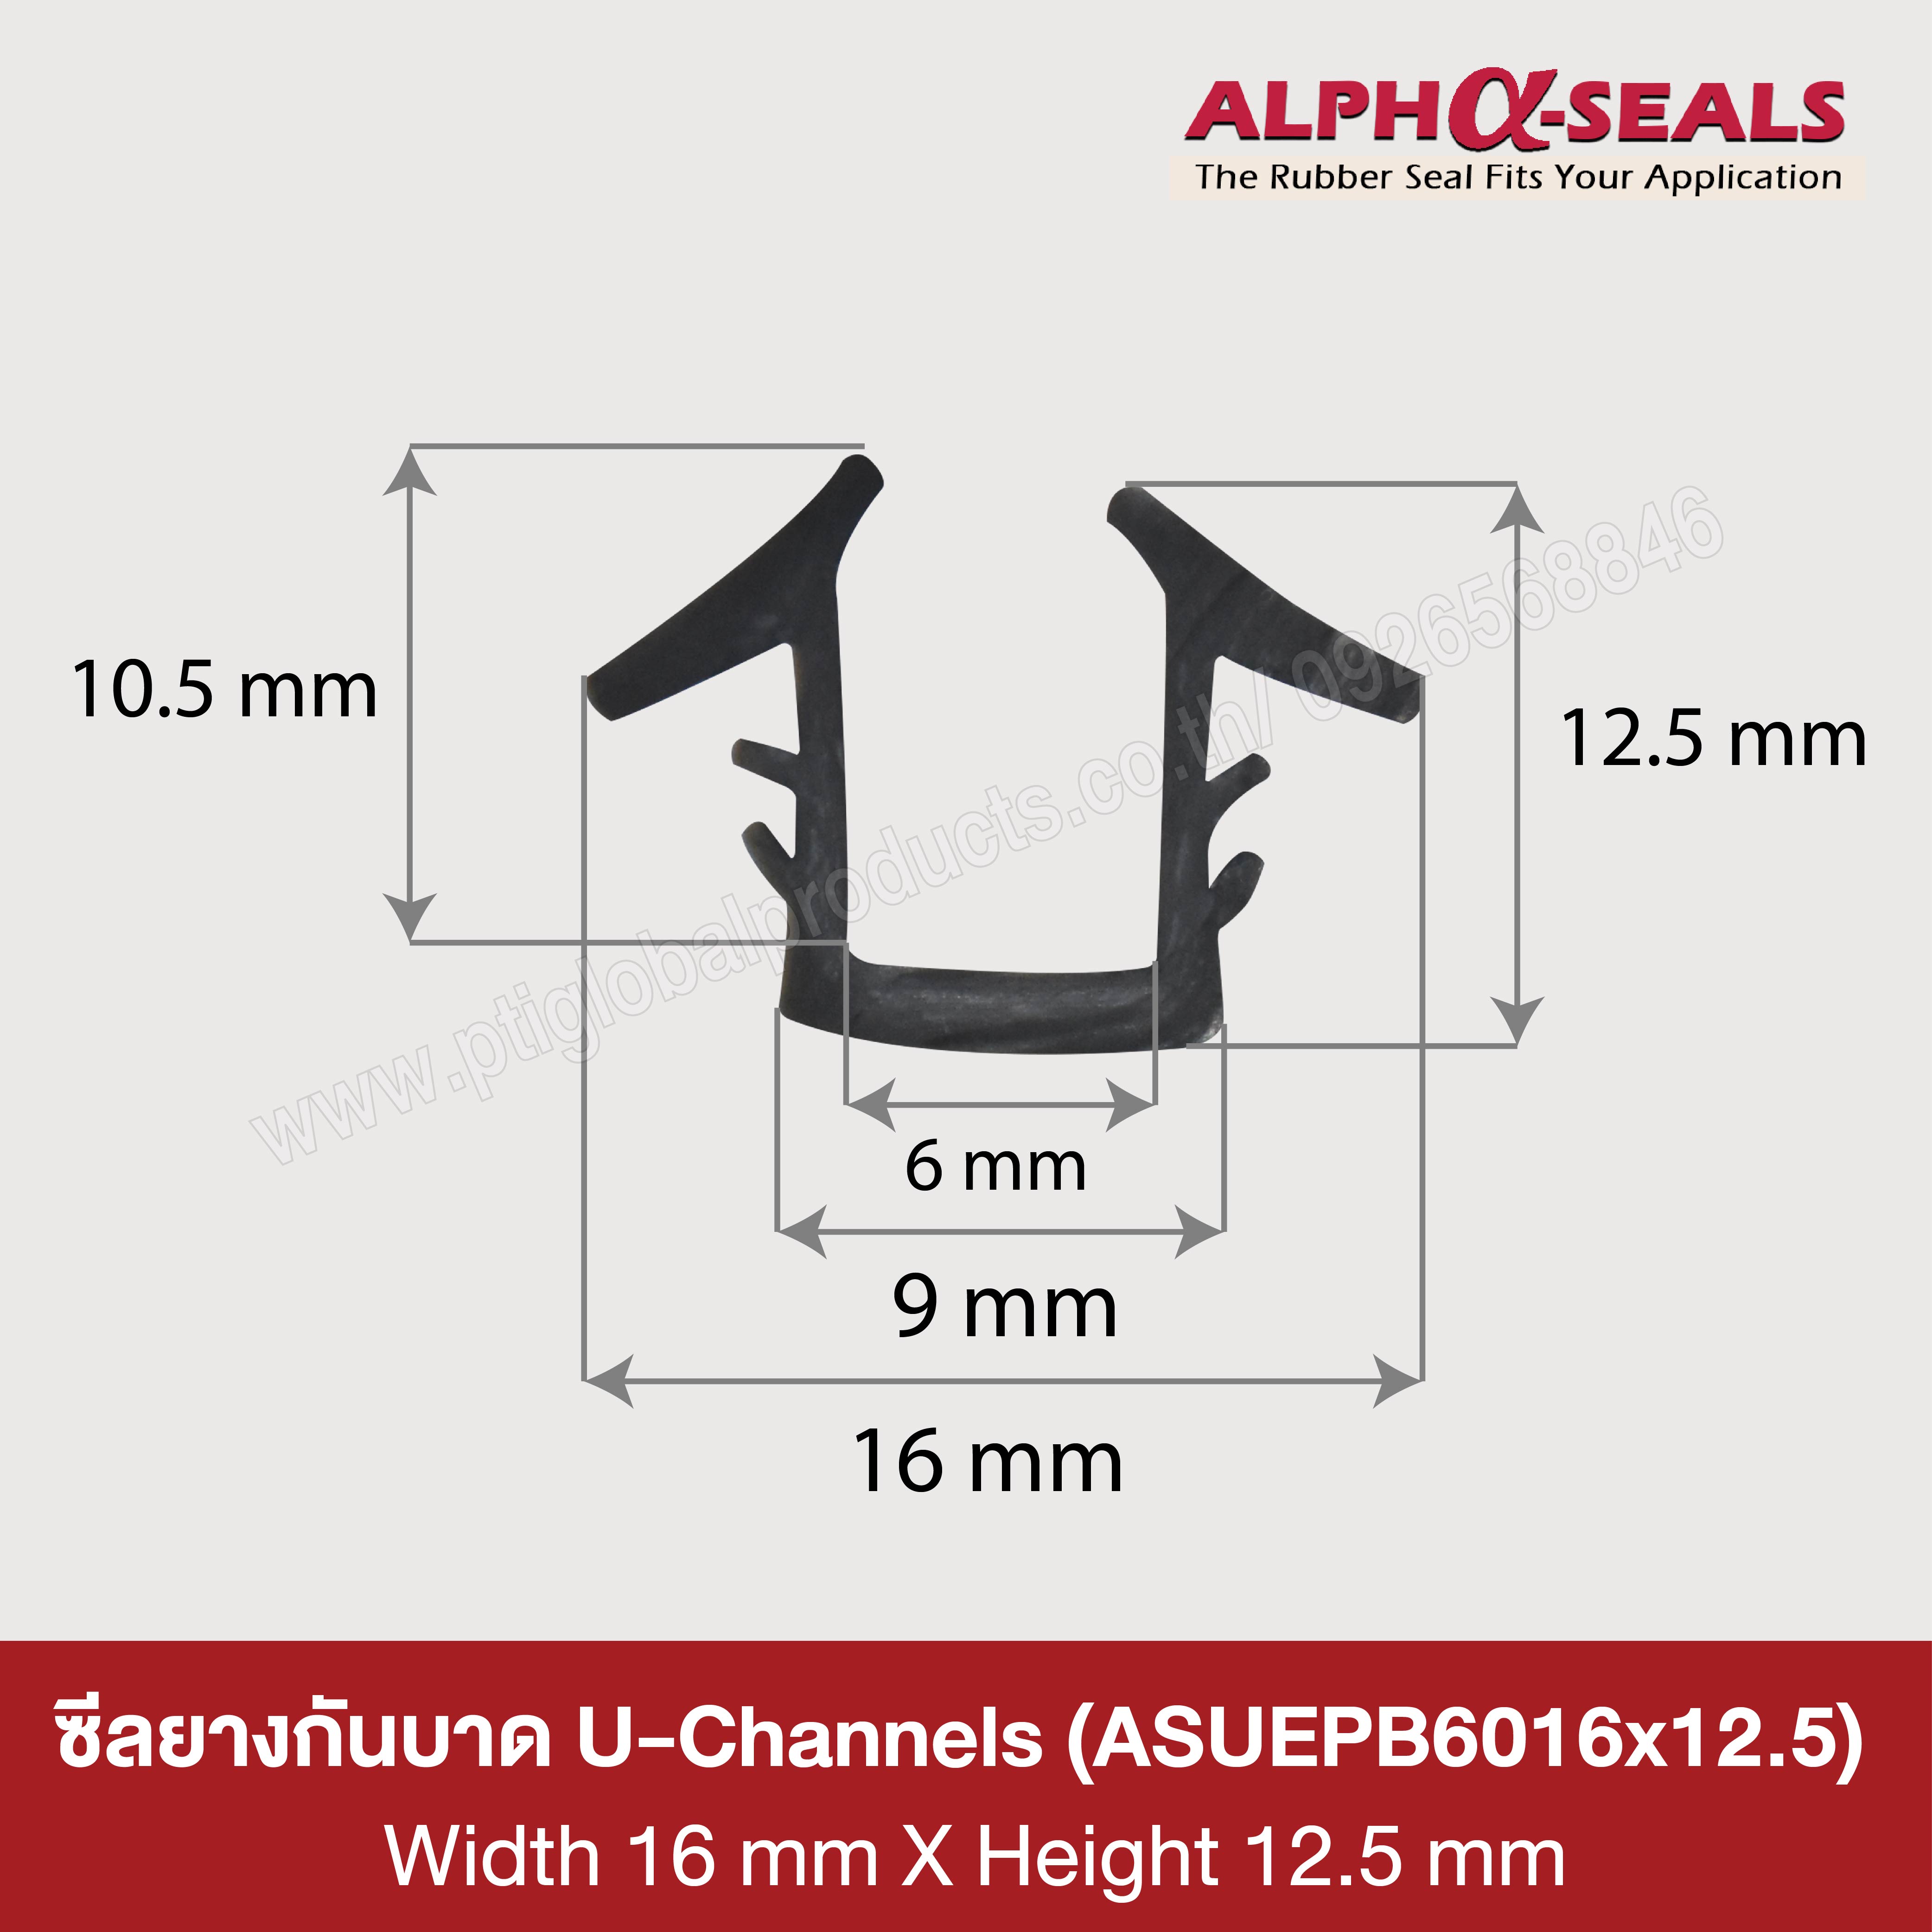 U-Channels rubber seal 16x12.5 mm.